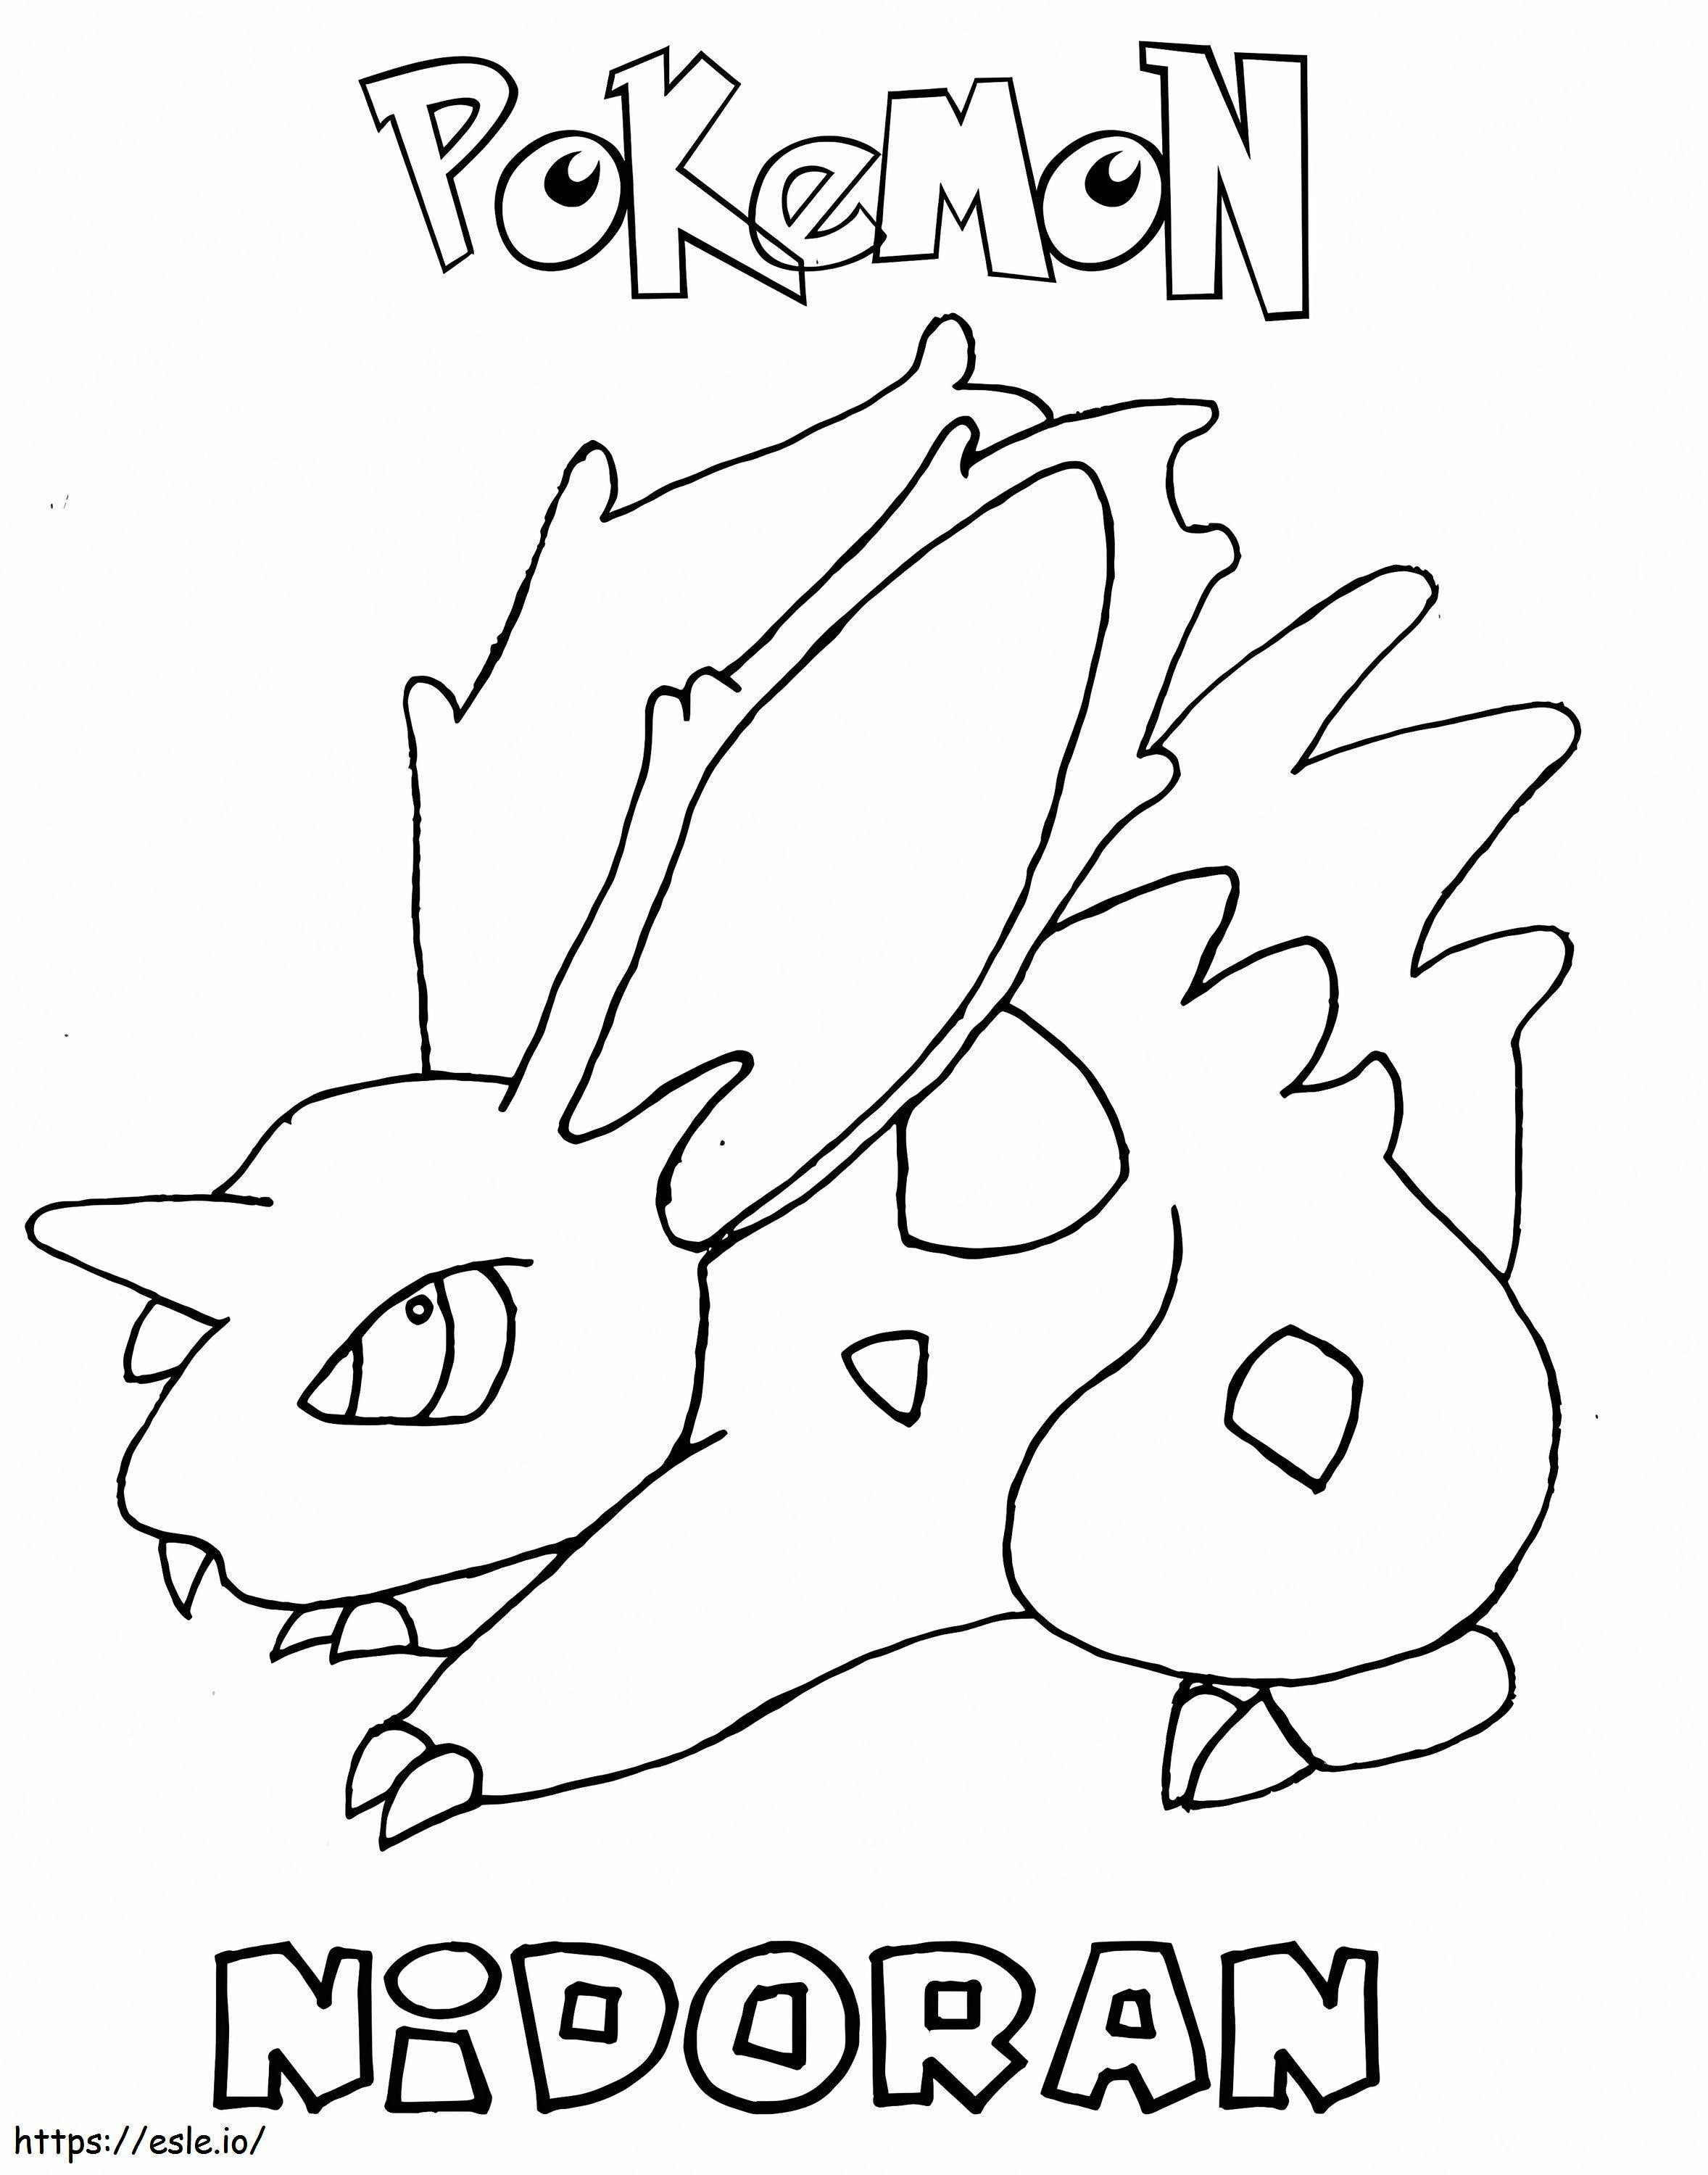 Pokemon Nidoranm do wydrukowania kolorowanka